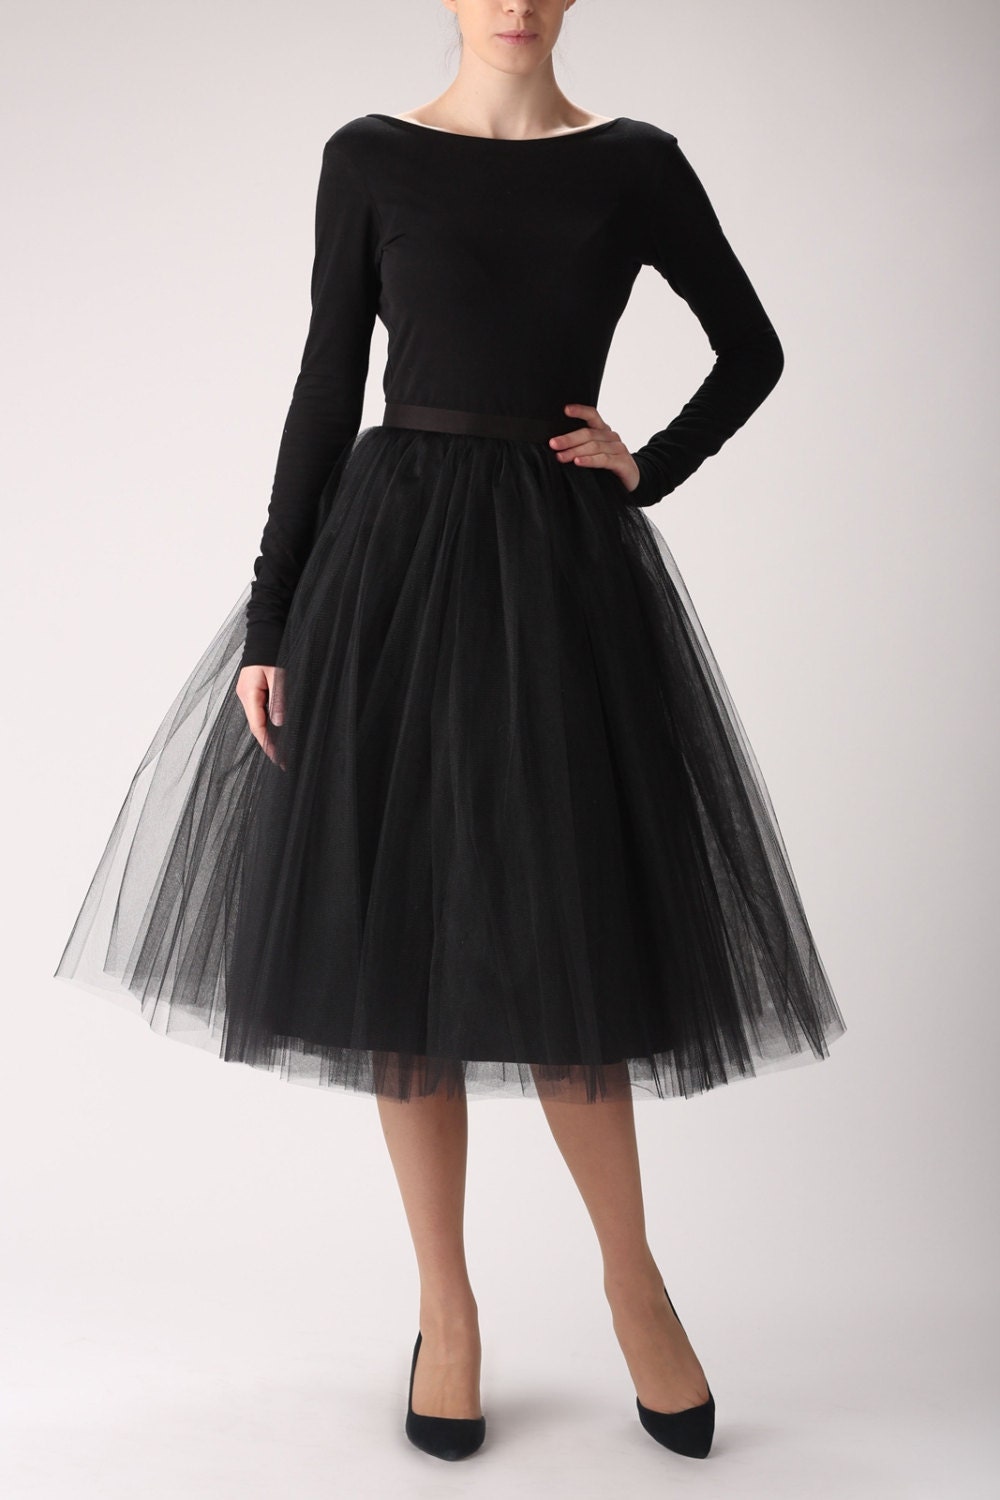 Black Tulle Skirt Handmade Long Skirt Handmade Tutu Skirt 5770